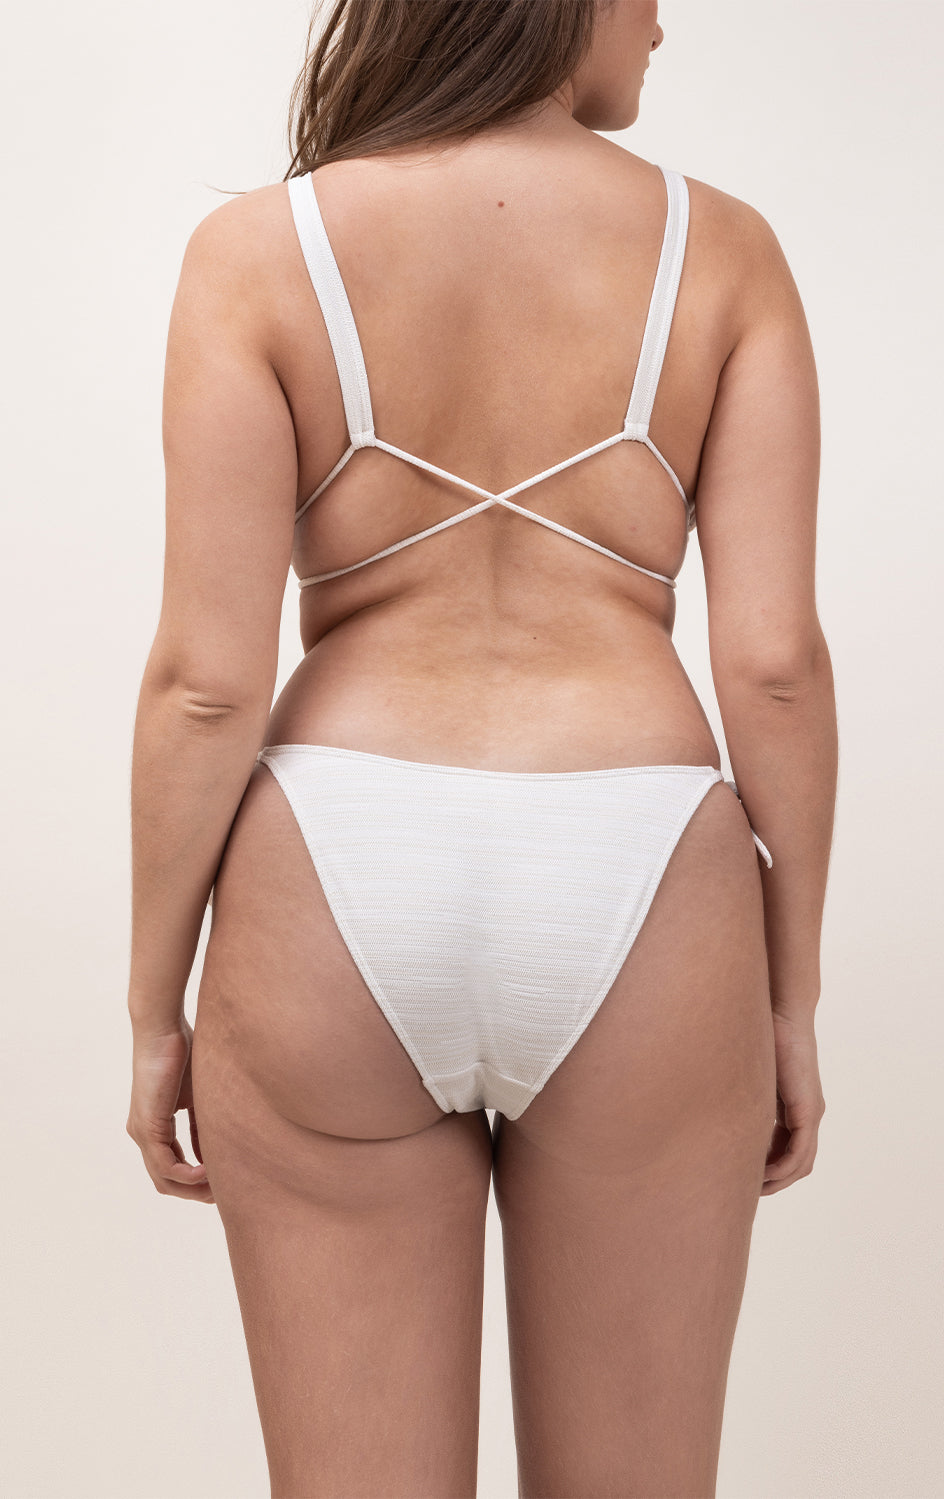 Photo d'une femme à forte poitrine de dos portant le bas de maillot de bain Monterosso ivoire jacquard